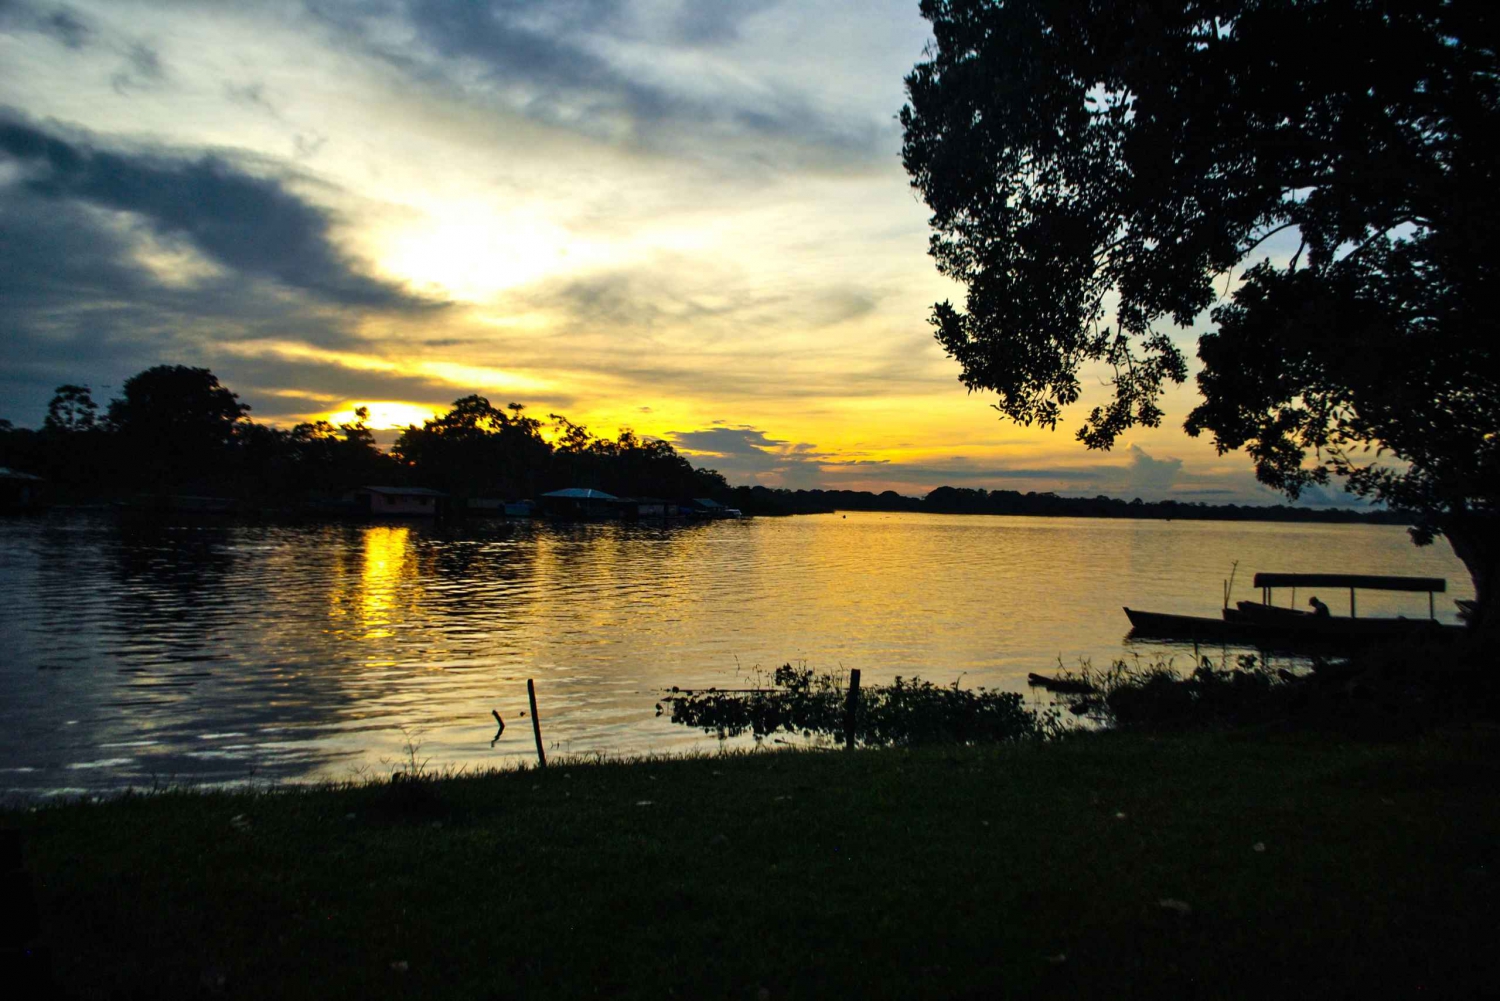 Amazonas Express: Explore Puerto Nariño and Tarapoto Lakes